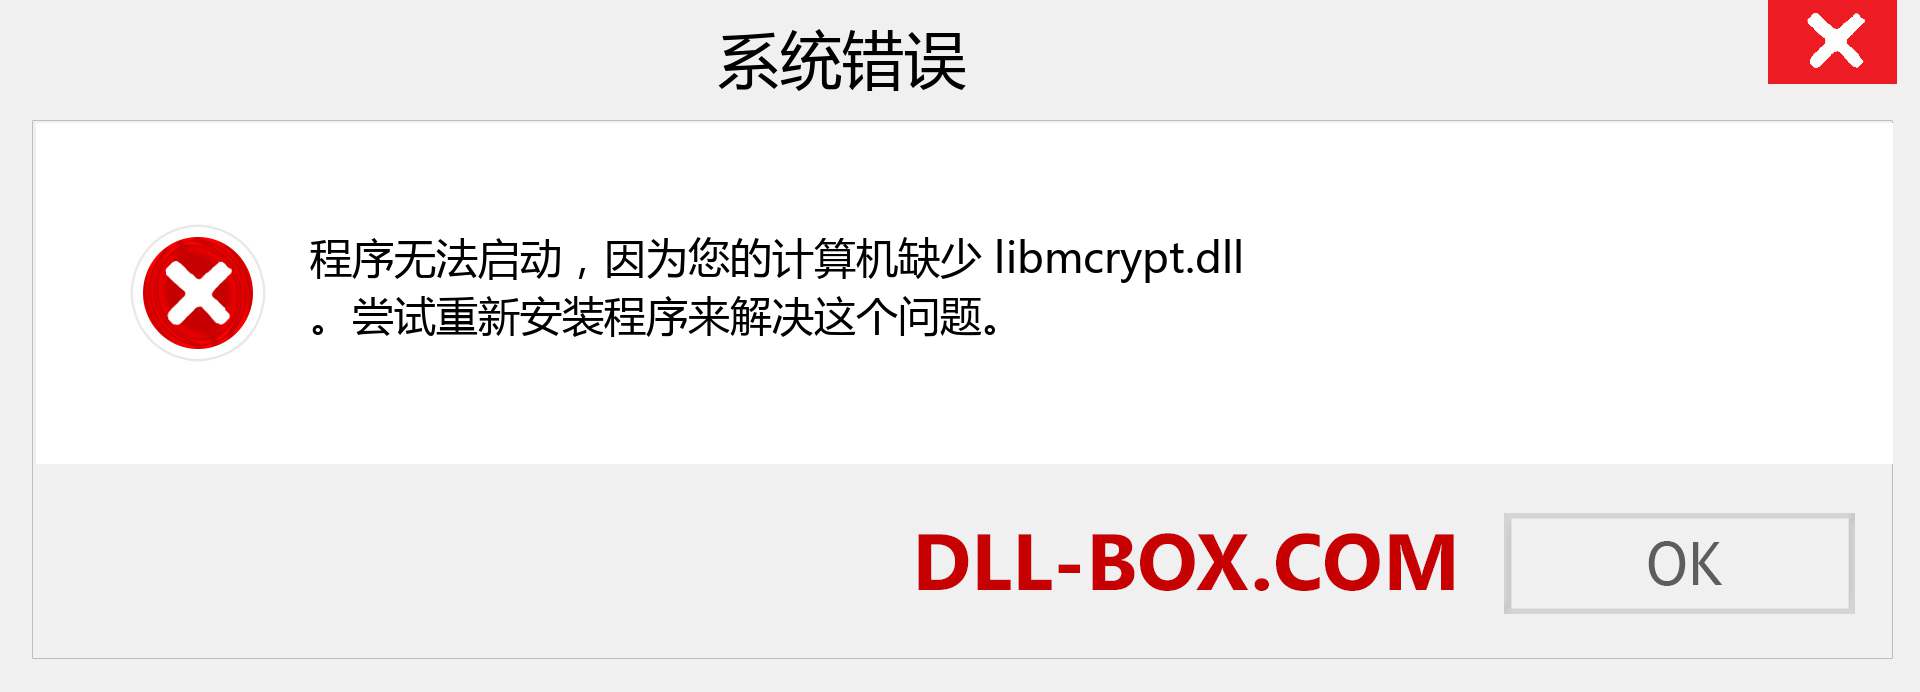 libmcrypt.dll 文件丢失？。 适用于 Windows 7、8、10 的下载 - 修复 Windows、照片、图像上的 libmcrypt dll 丢失错误